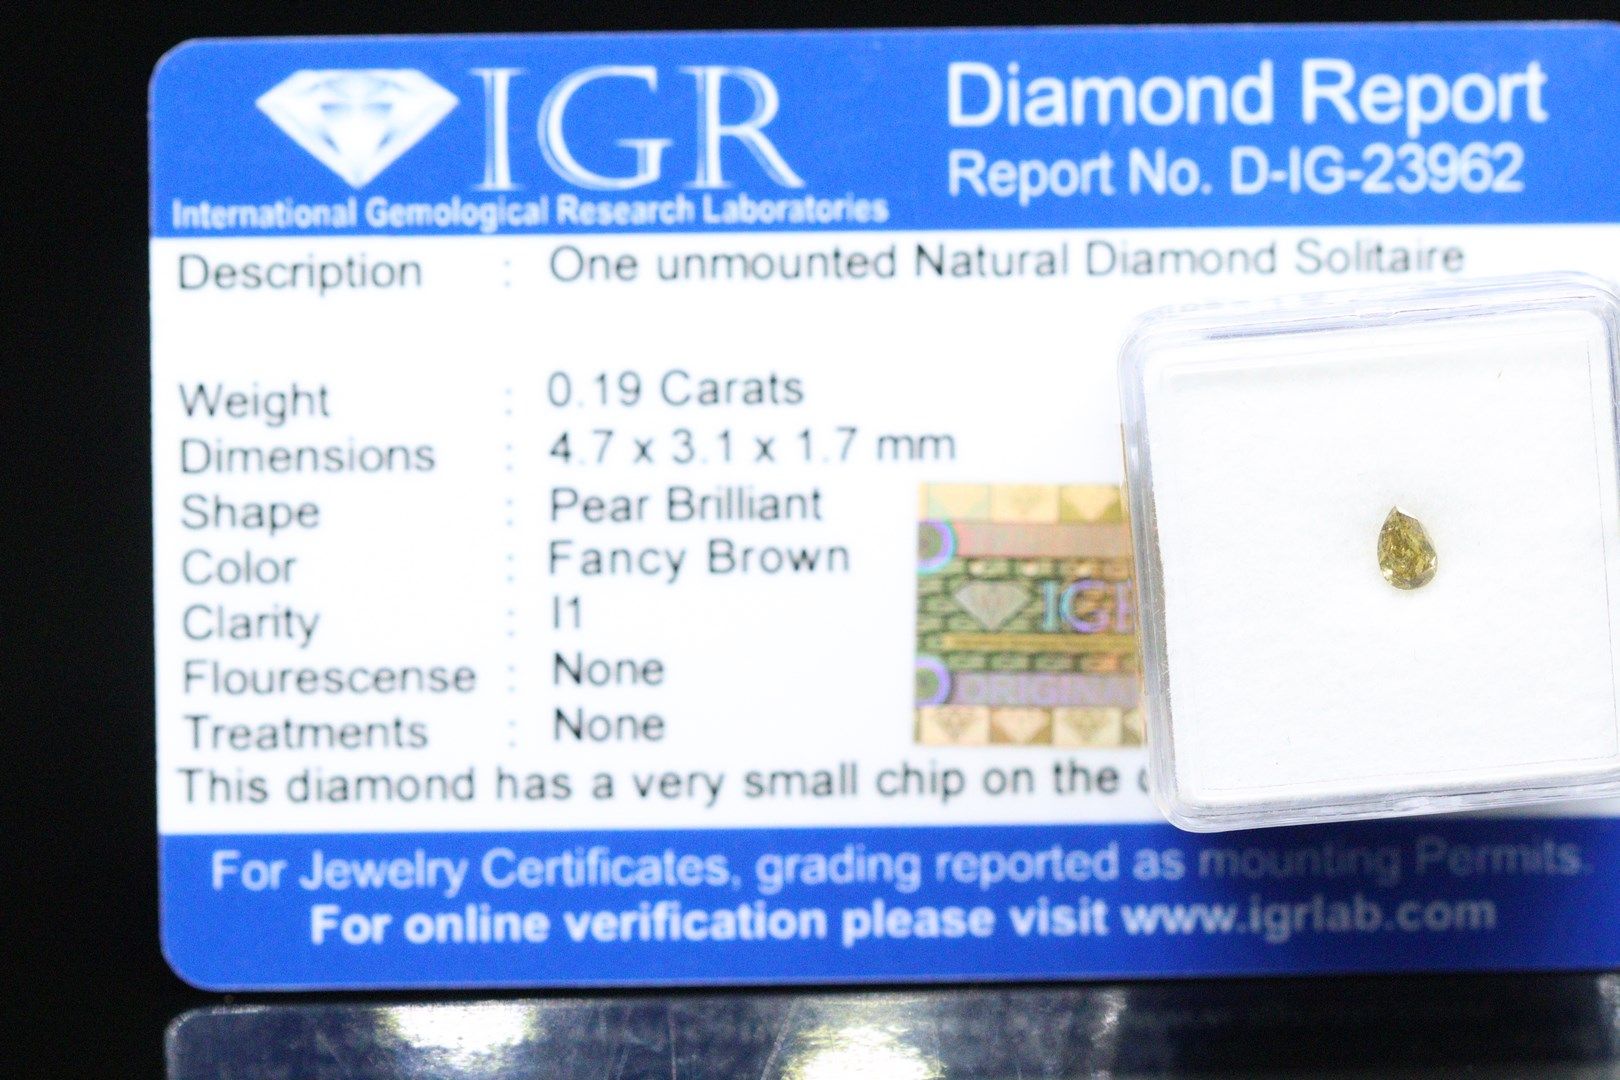 Null Runder "Fancy Brown"-Diamant, versiegelt.

Begleitet von einem IGR-Bericht,&hellip;